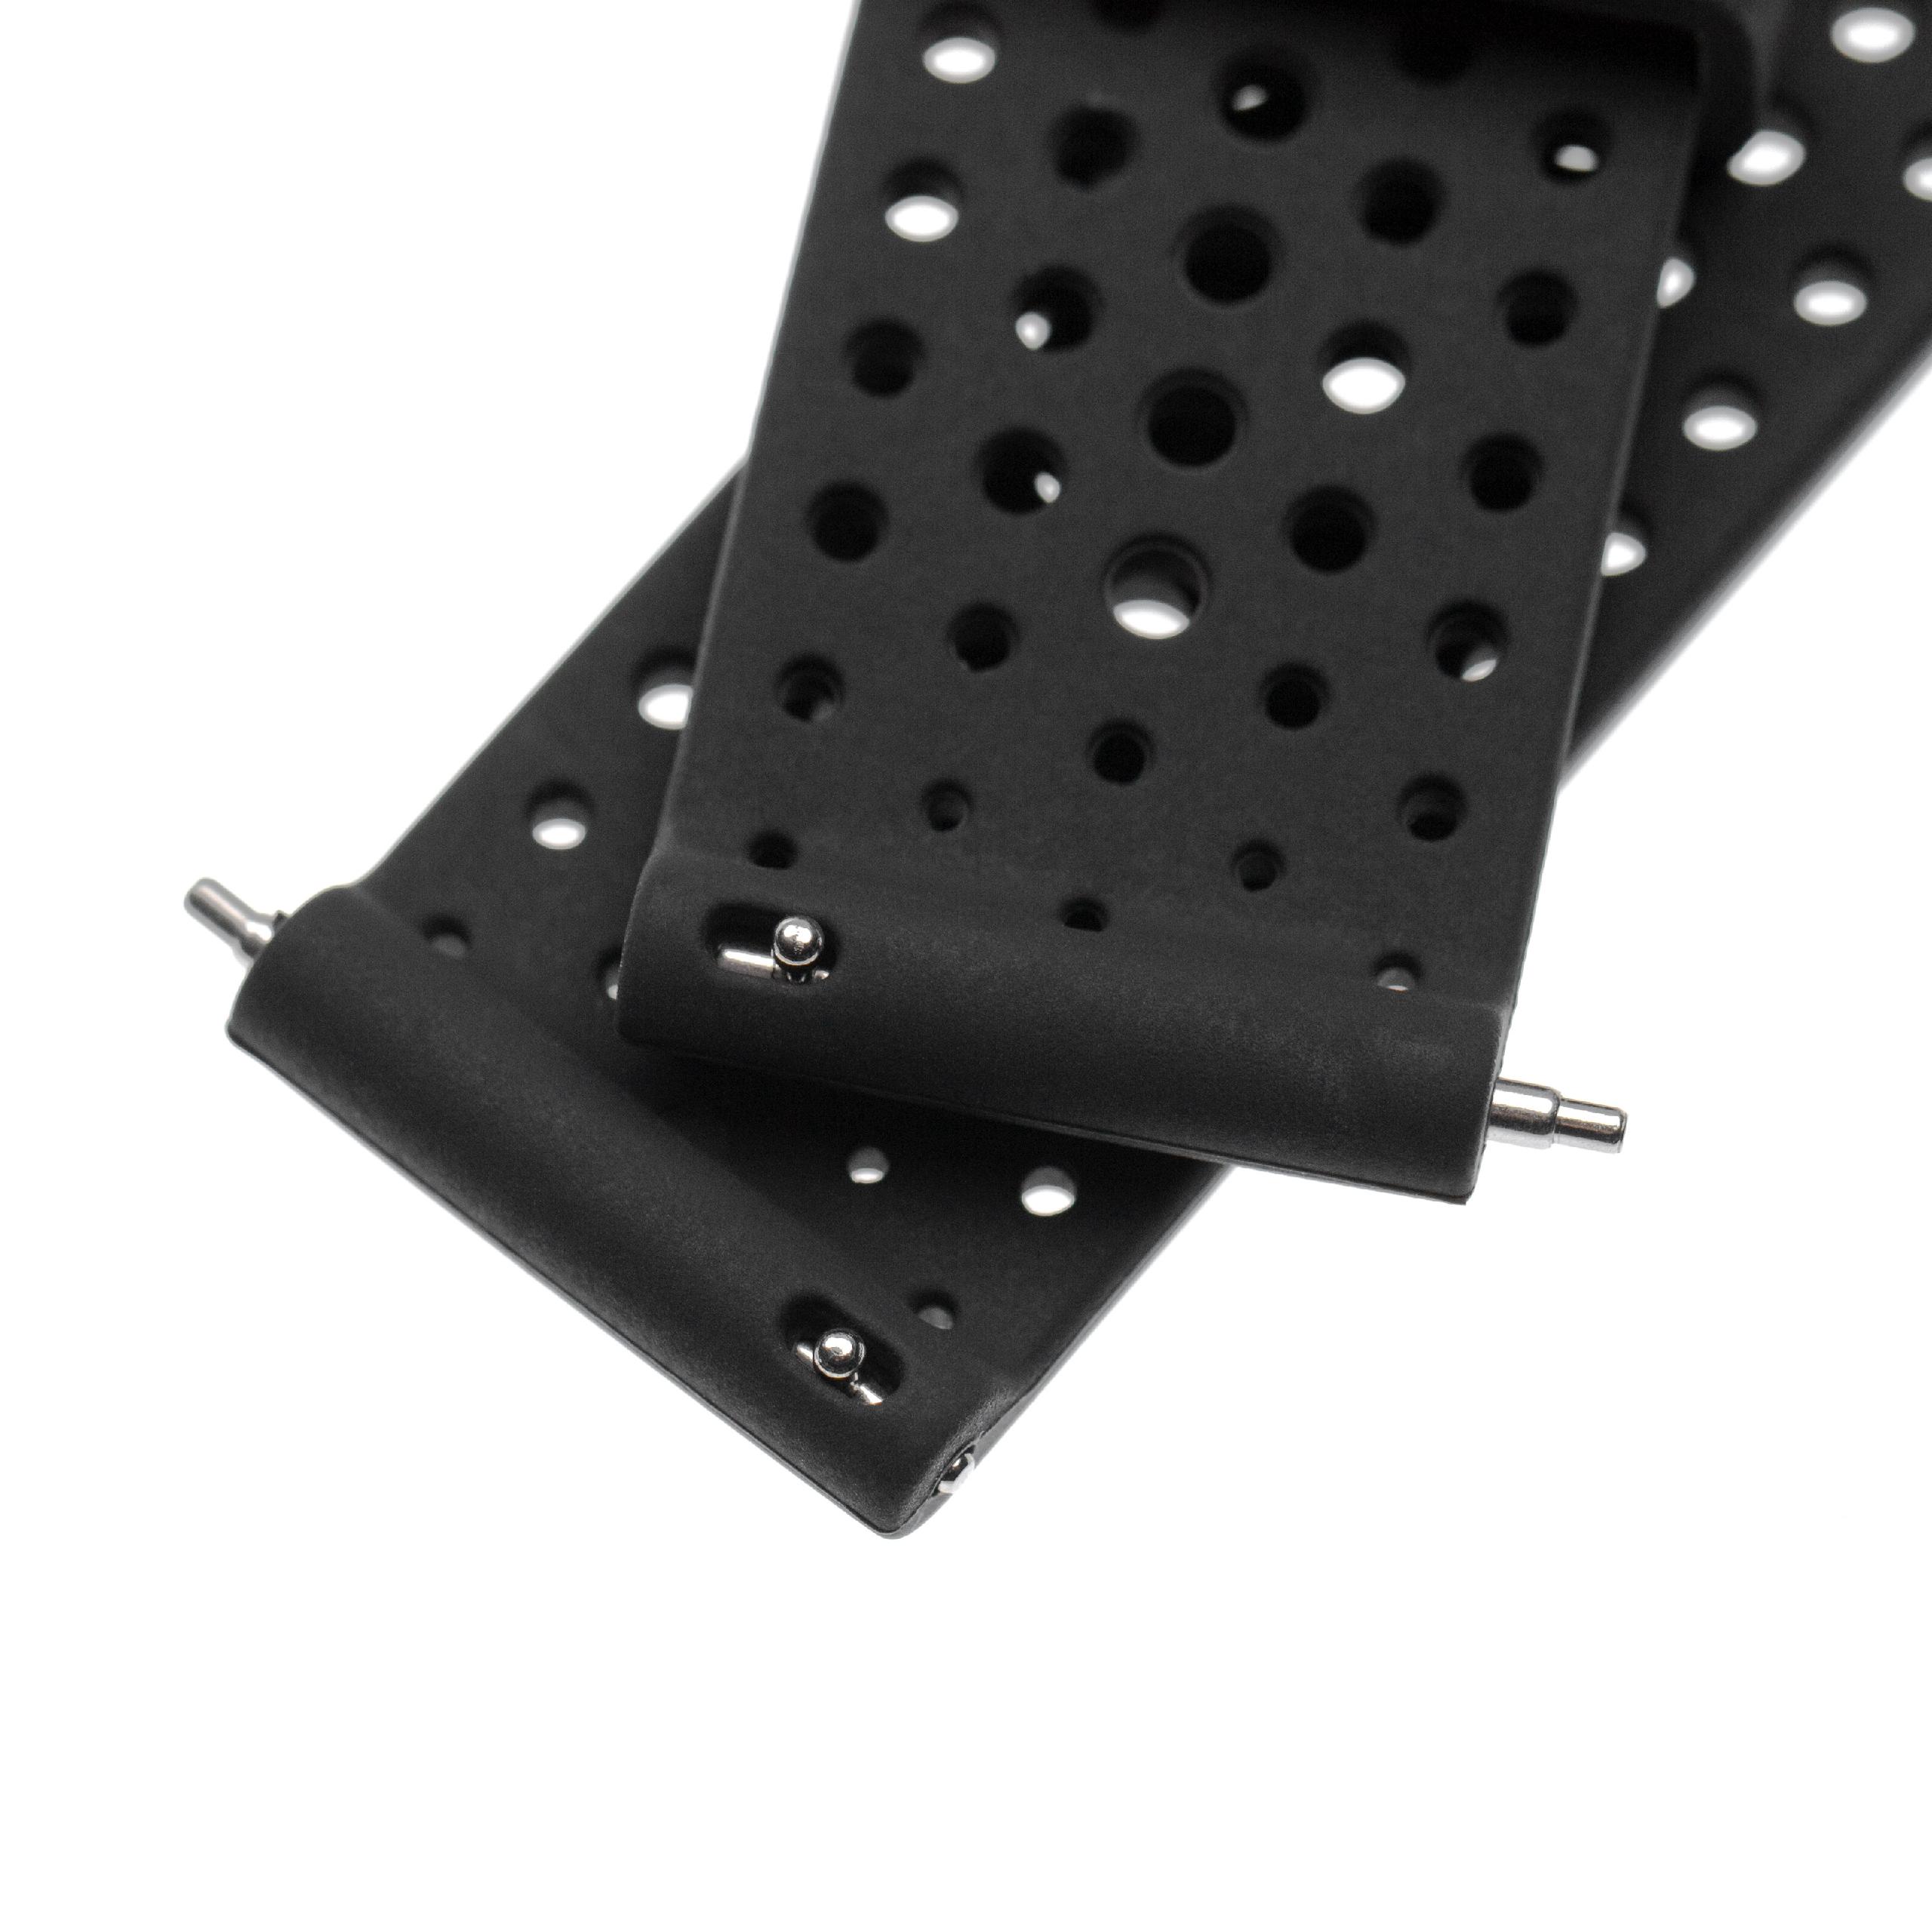 cinturino per Suunto Smartwatch - 13,4 + 9,5 cm lunghezza, 24mm ampiezza, silicone, nero